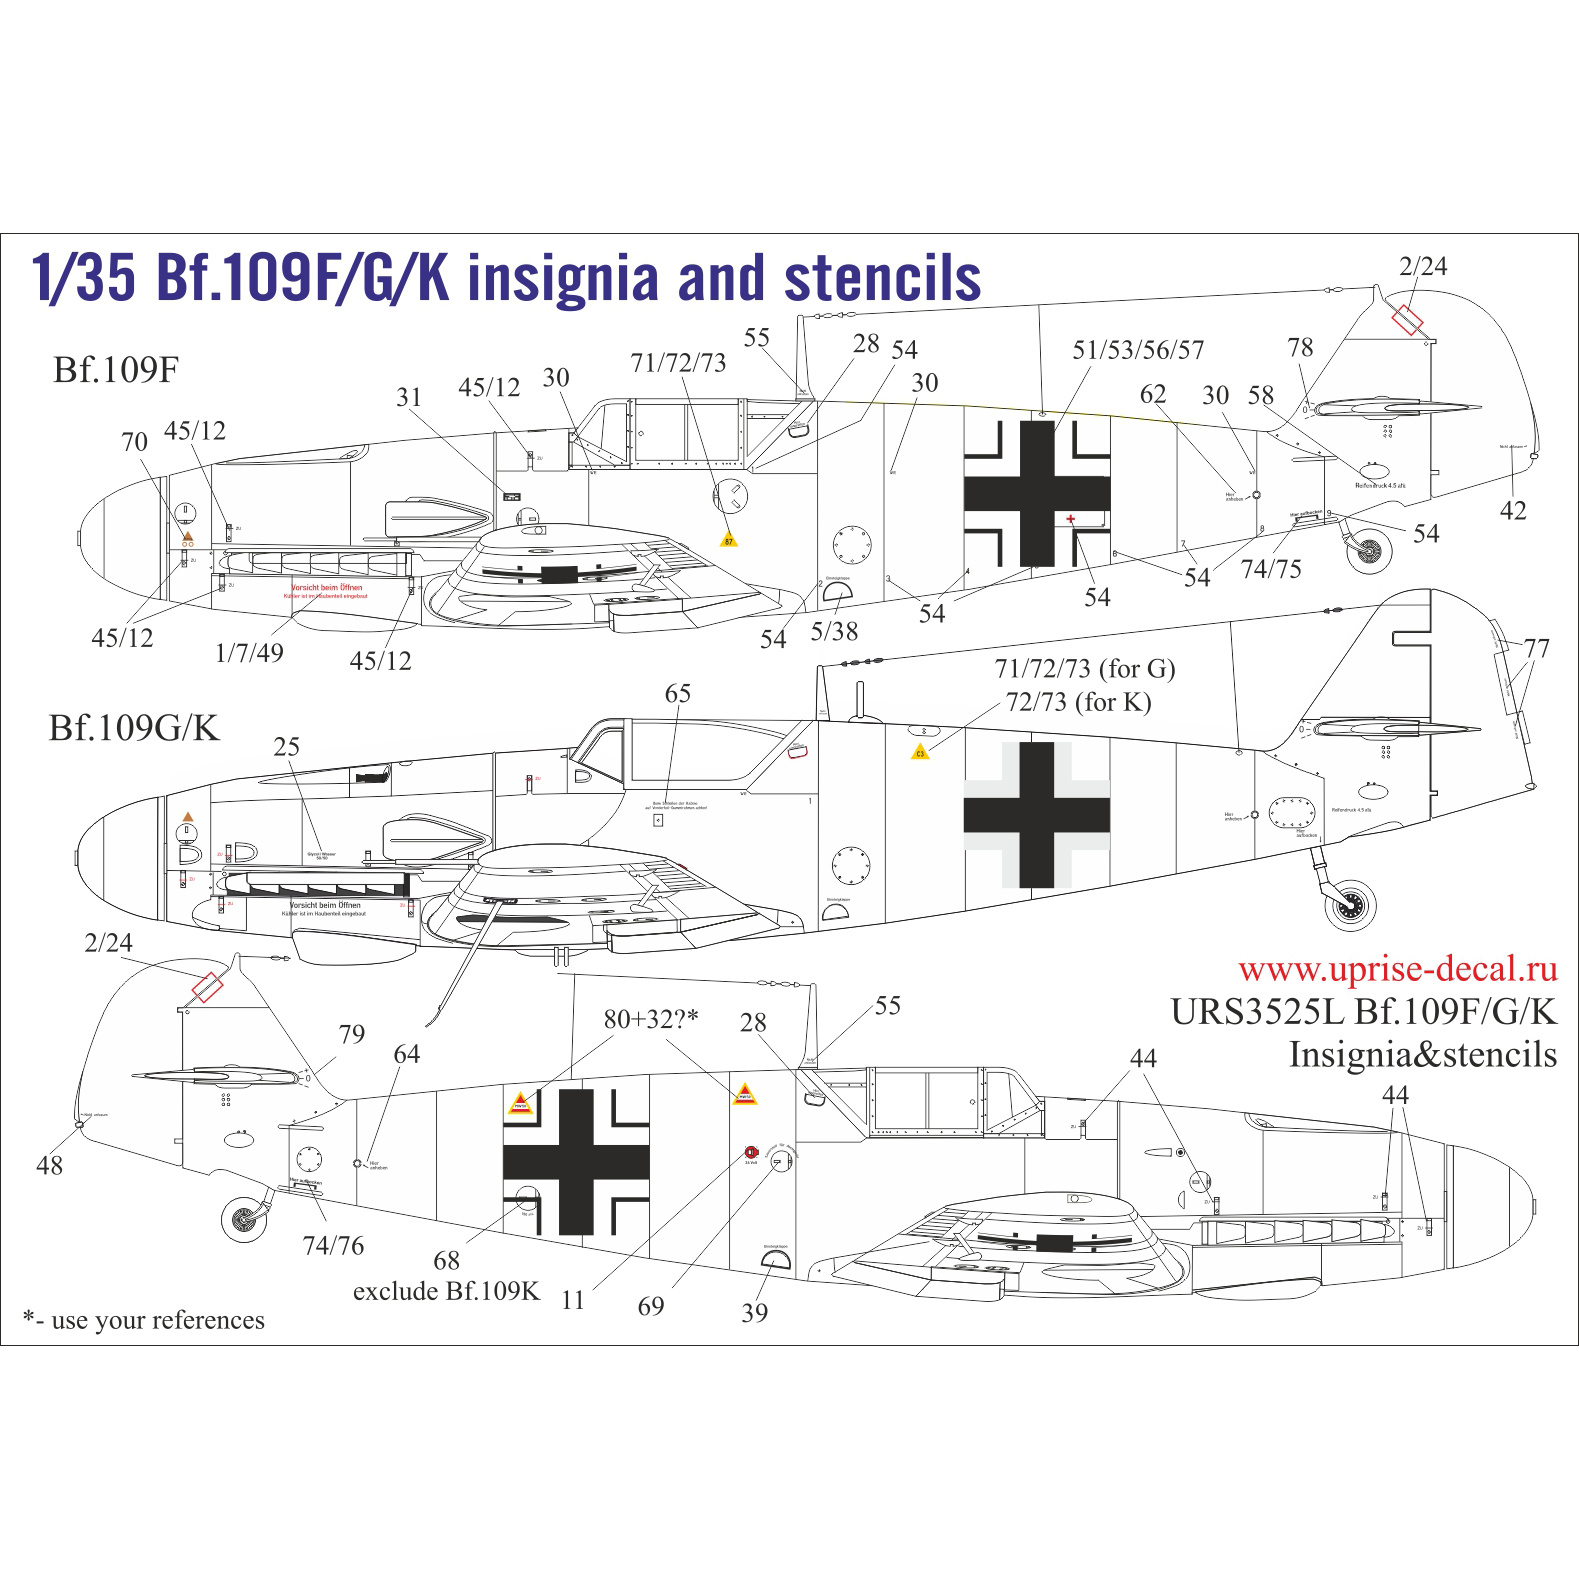 URS3525L UpRise 1/35 Декали для Bf.109F/G/K со знаками отличия и тех. надписями